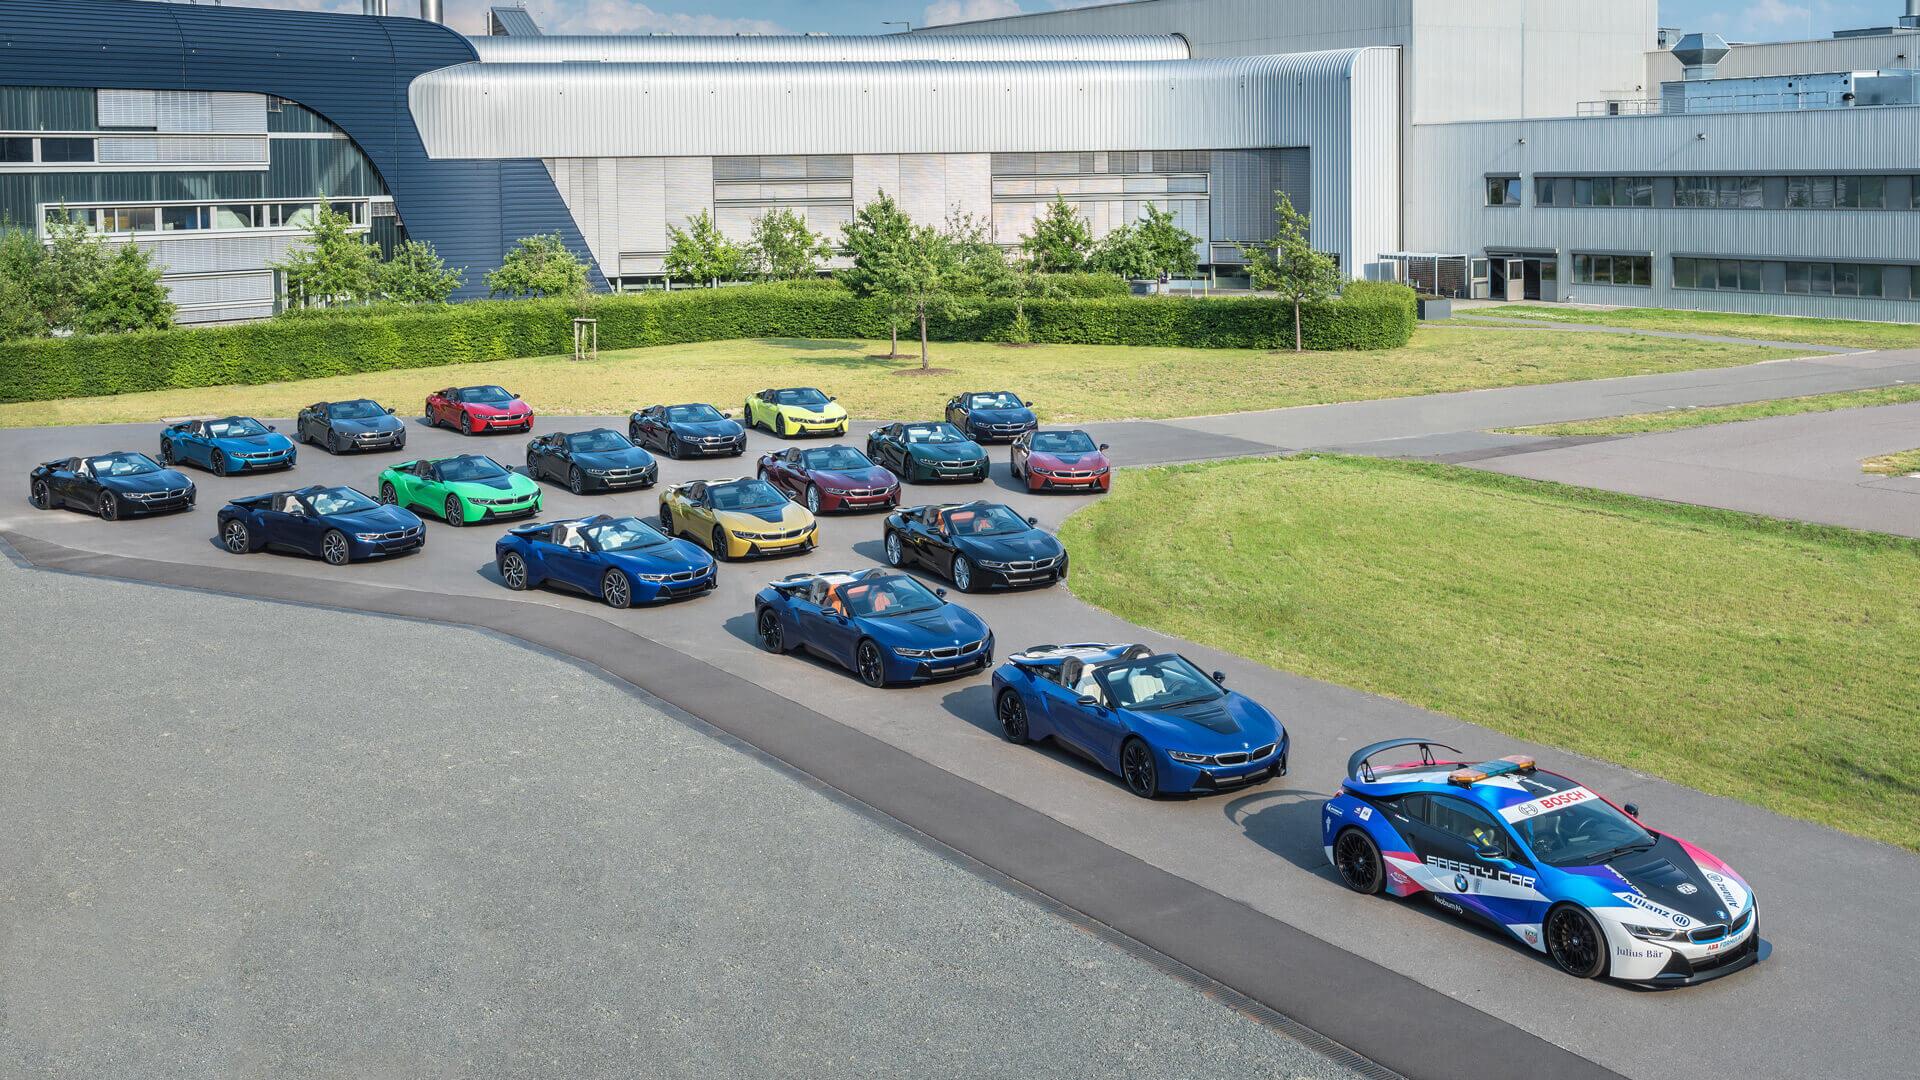 19 уникальных экземпляров BMW i8 покинули завод BMW Group в Лейпциге